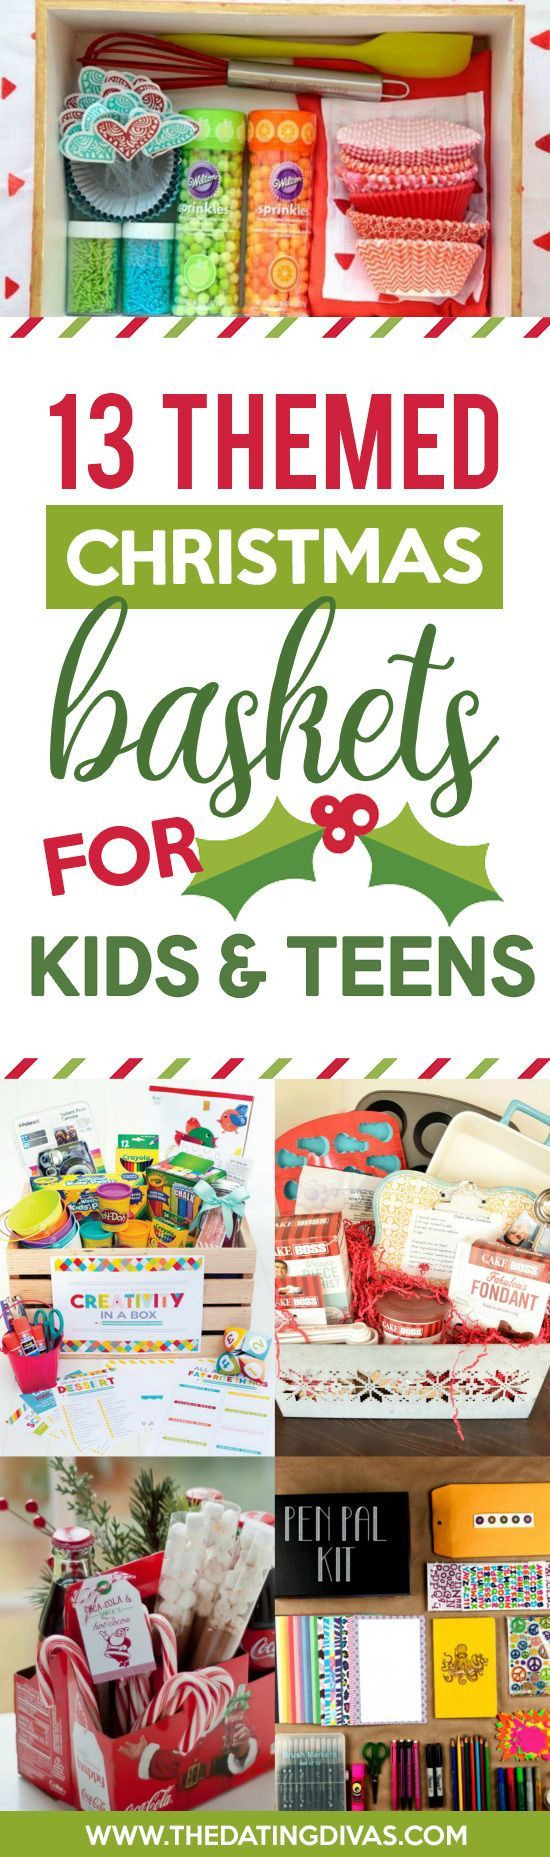 Christmas Gift Basket Ideas For Kids
 Christmas Gift Basket Ideas for Everyone